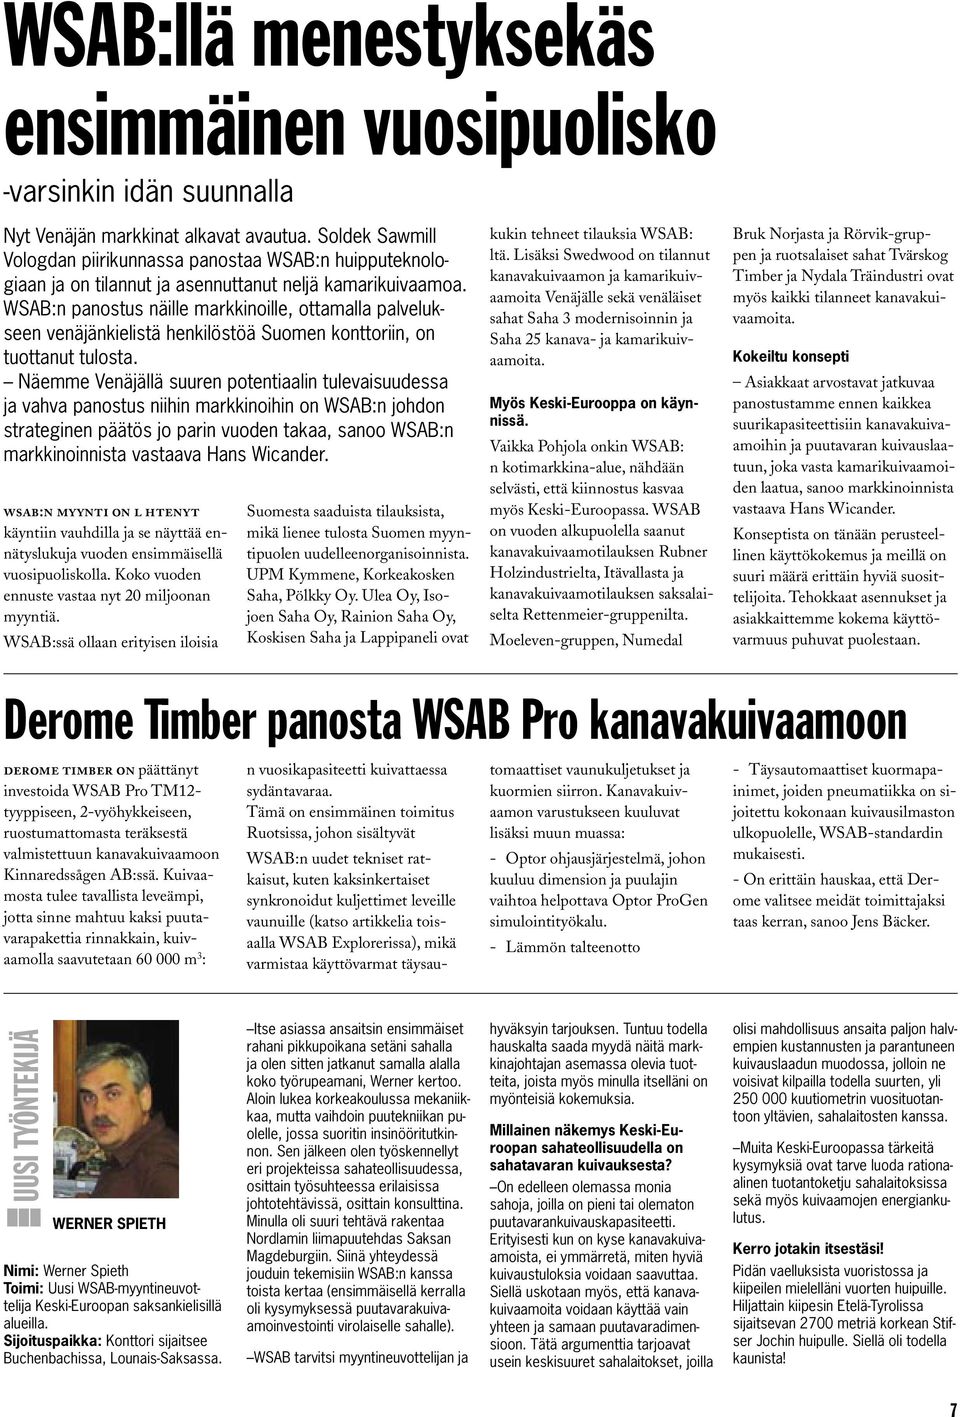 WSAB:n panostus näille markkinoille, ottamalla palvelukseen venäjänkielistä henkilöstöä Suomen konttoriin, on tuottanut tulosta.